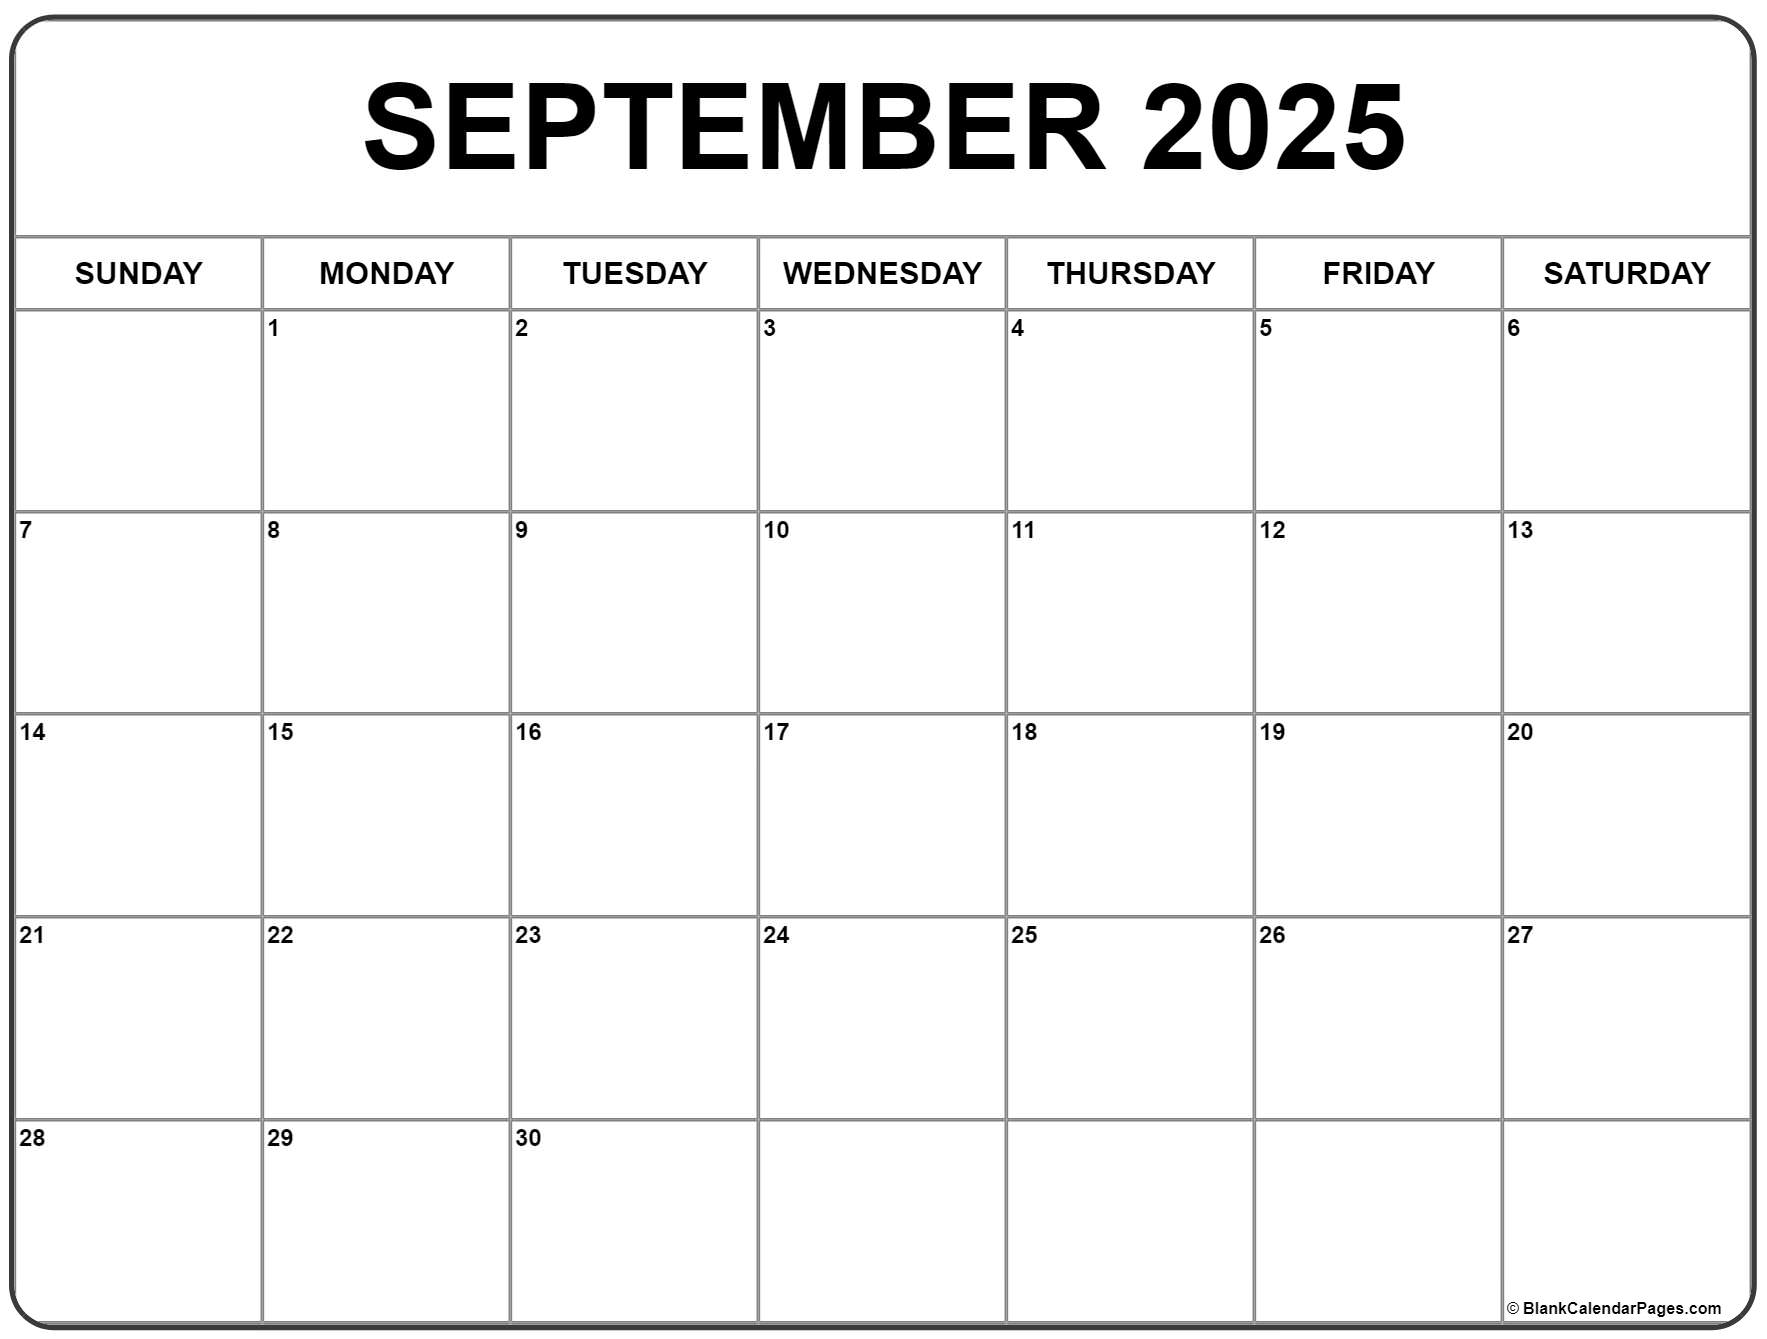 September 2025 Through August 2025 Calendar 